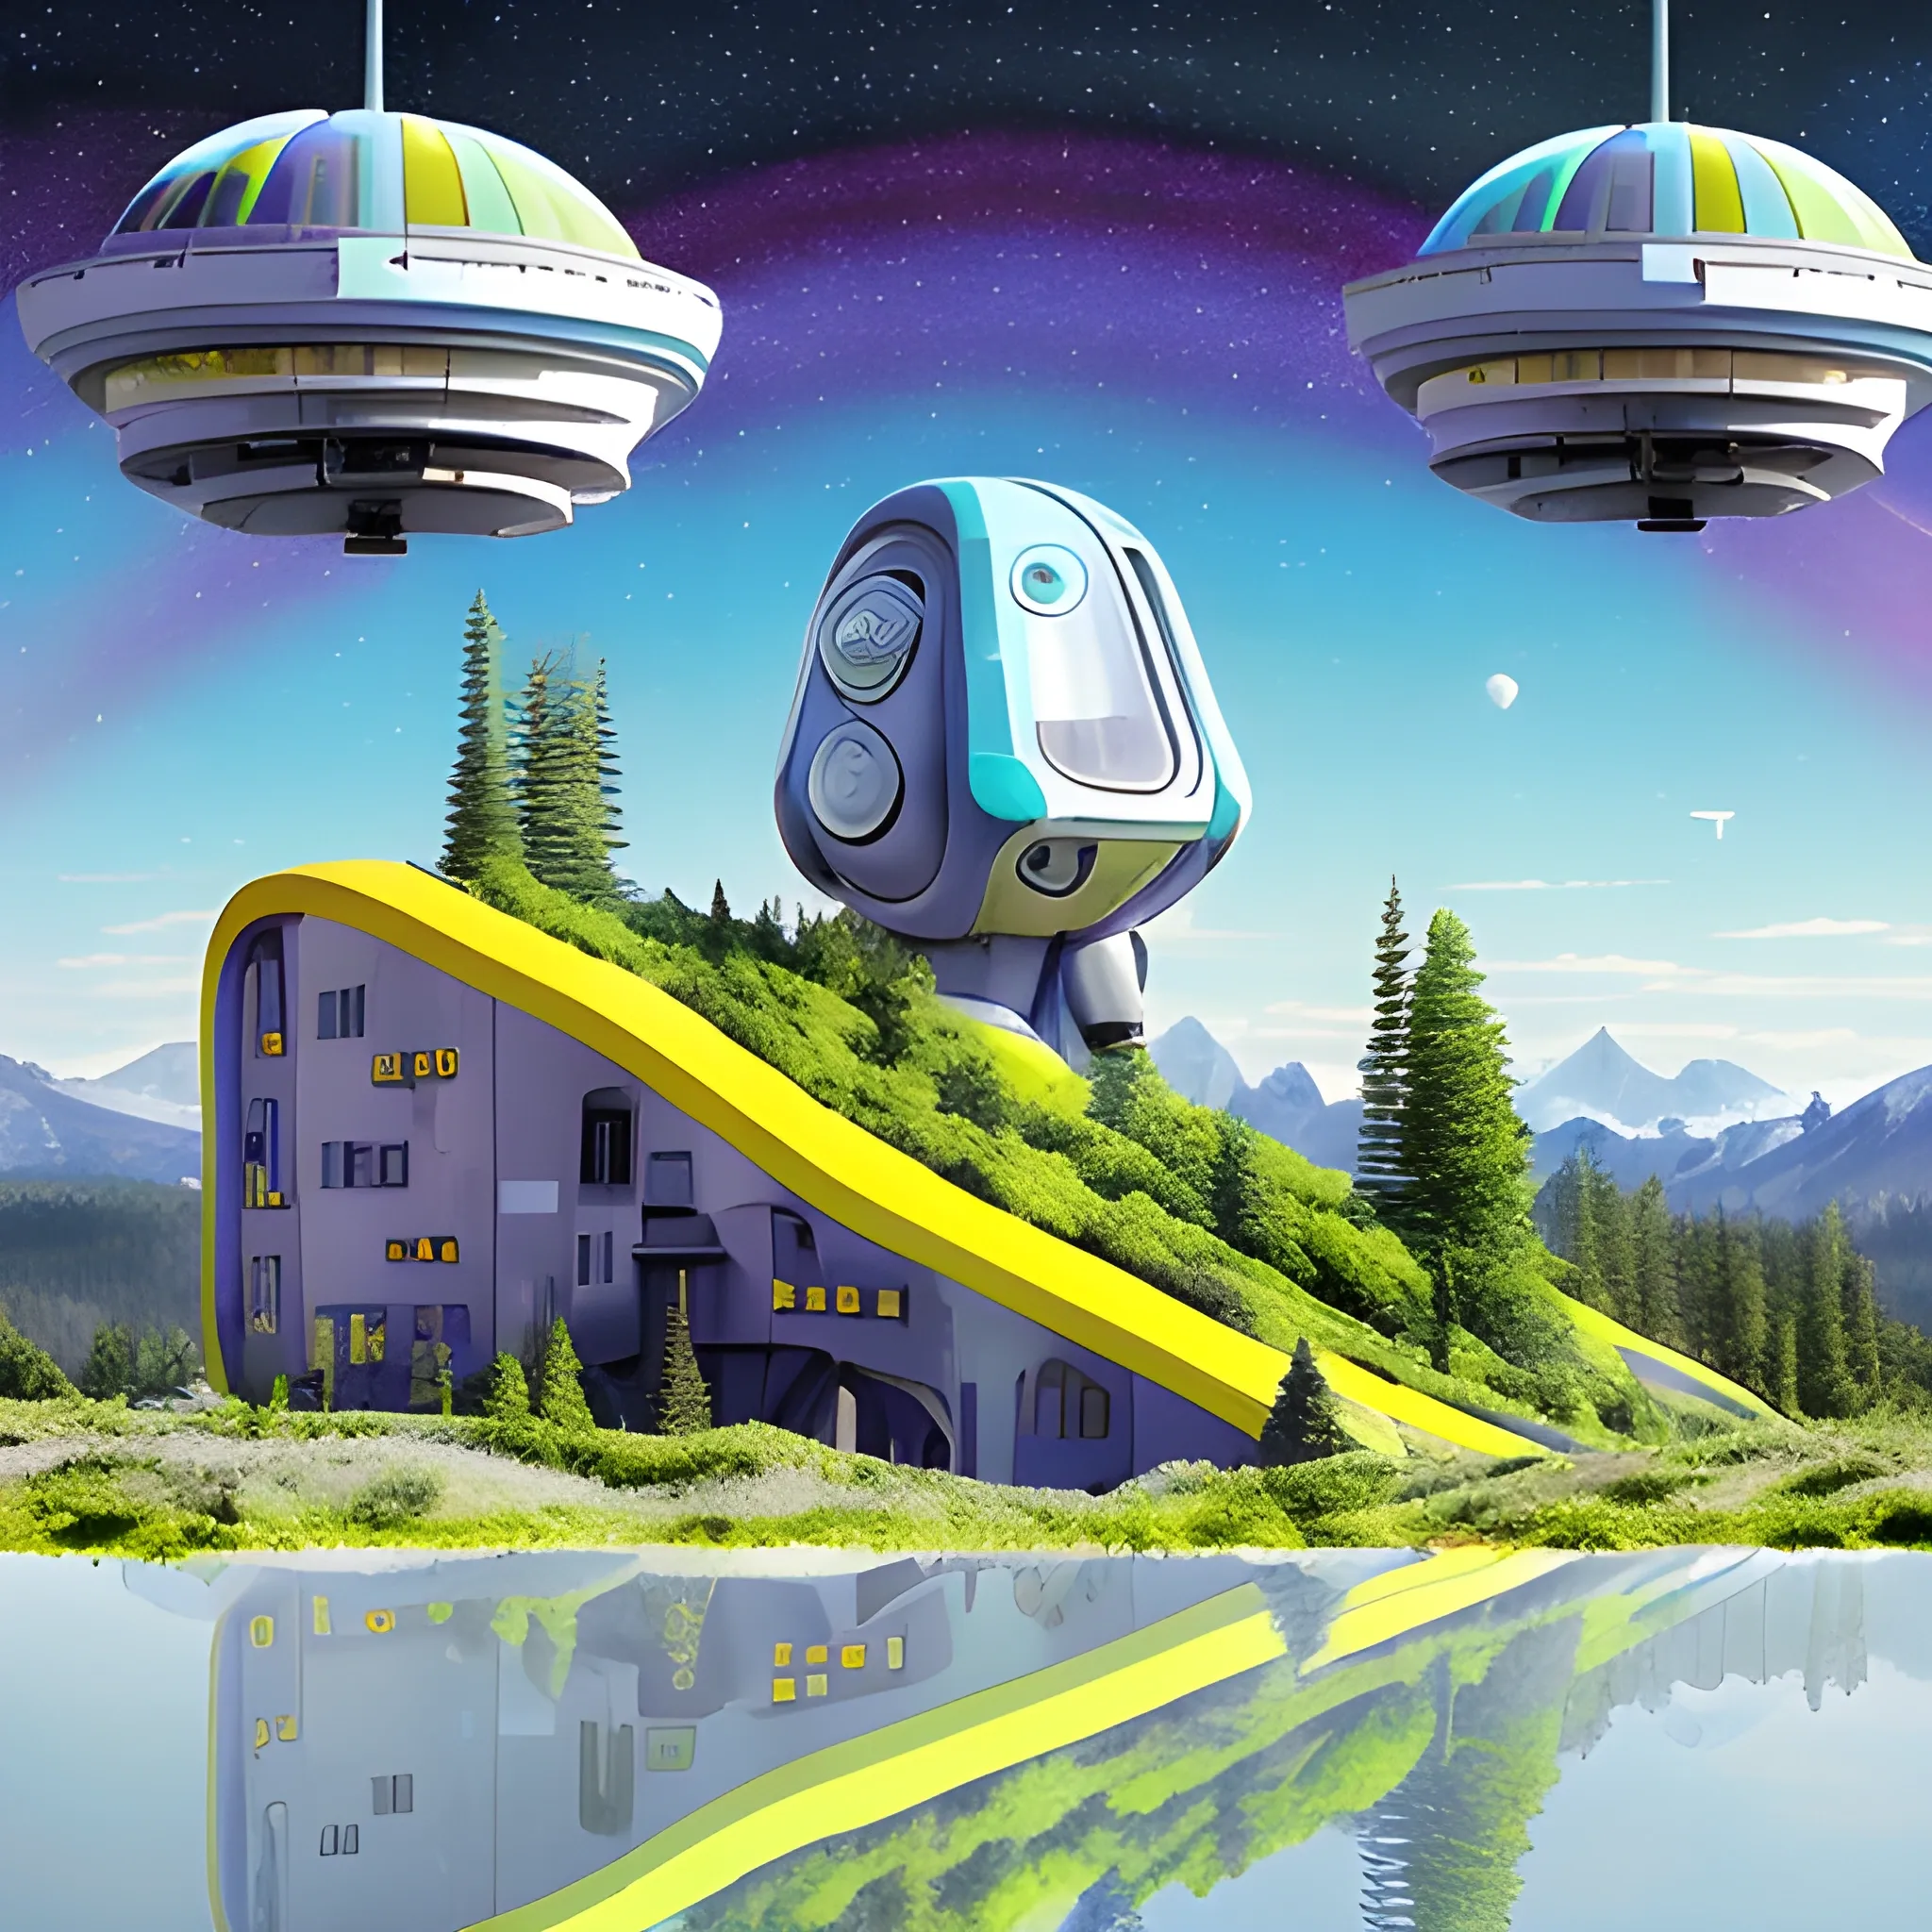 Paysage de science-fiction fantastique psychédélique très coloré avec des maison futuriste, des robots travailleurs, montagnes en arrière-plan avec des chutes d'eau colorés et animaux jouant autour d'un lac au pied des montagne arboré de grand arbres millénaires